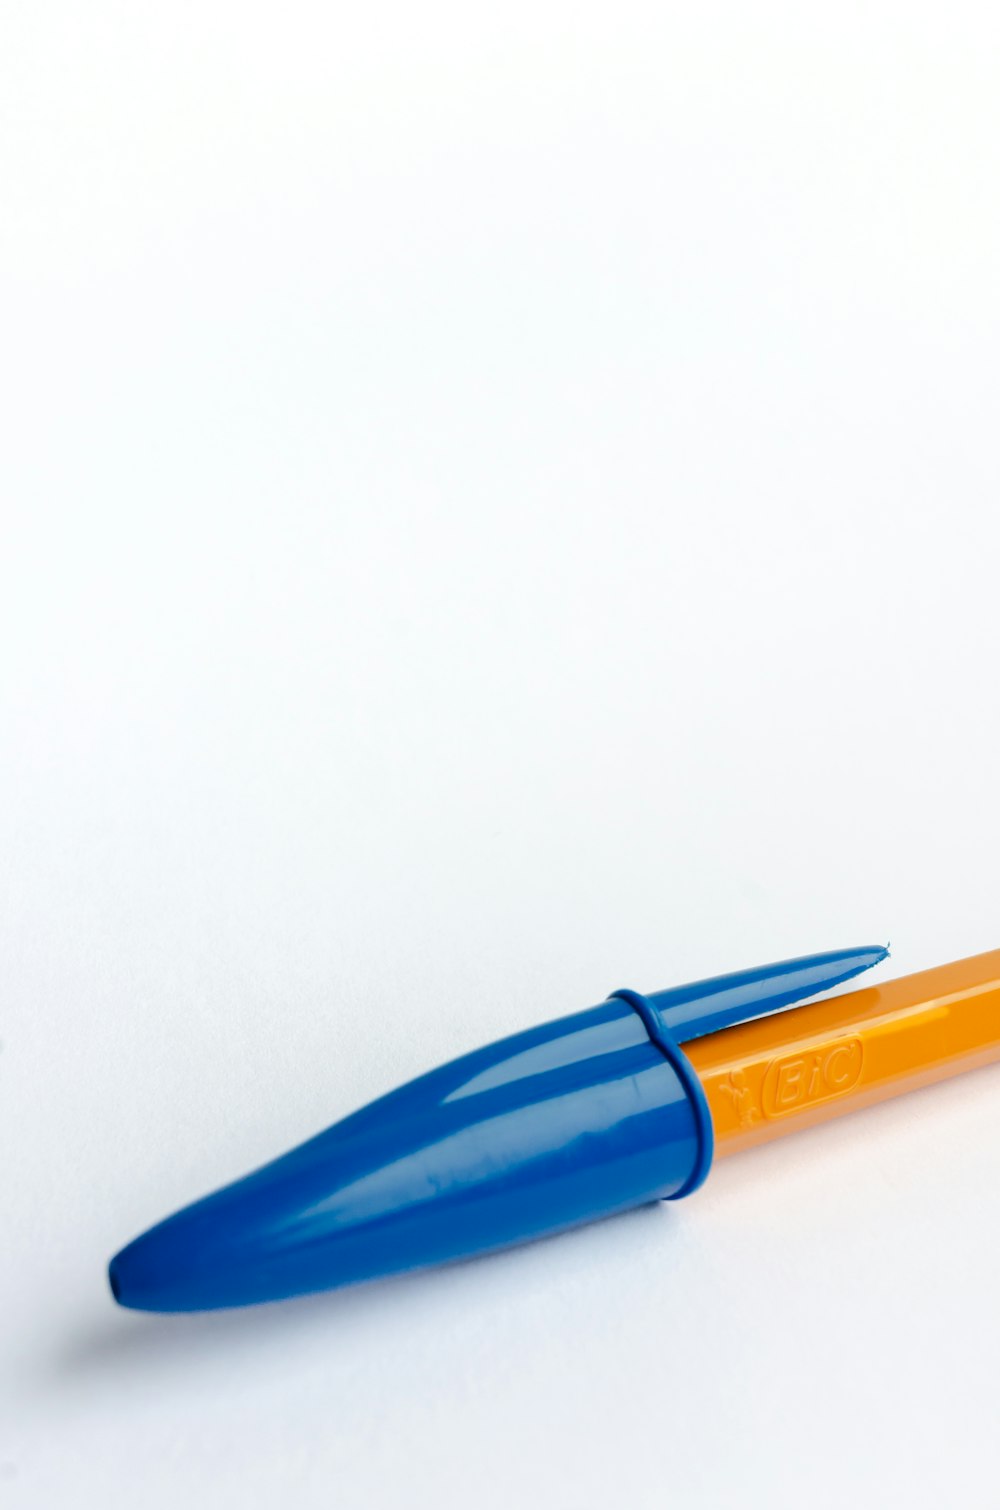 un stylo bleu et orange posé sur une table blanche